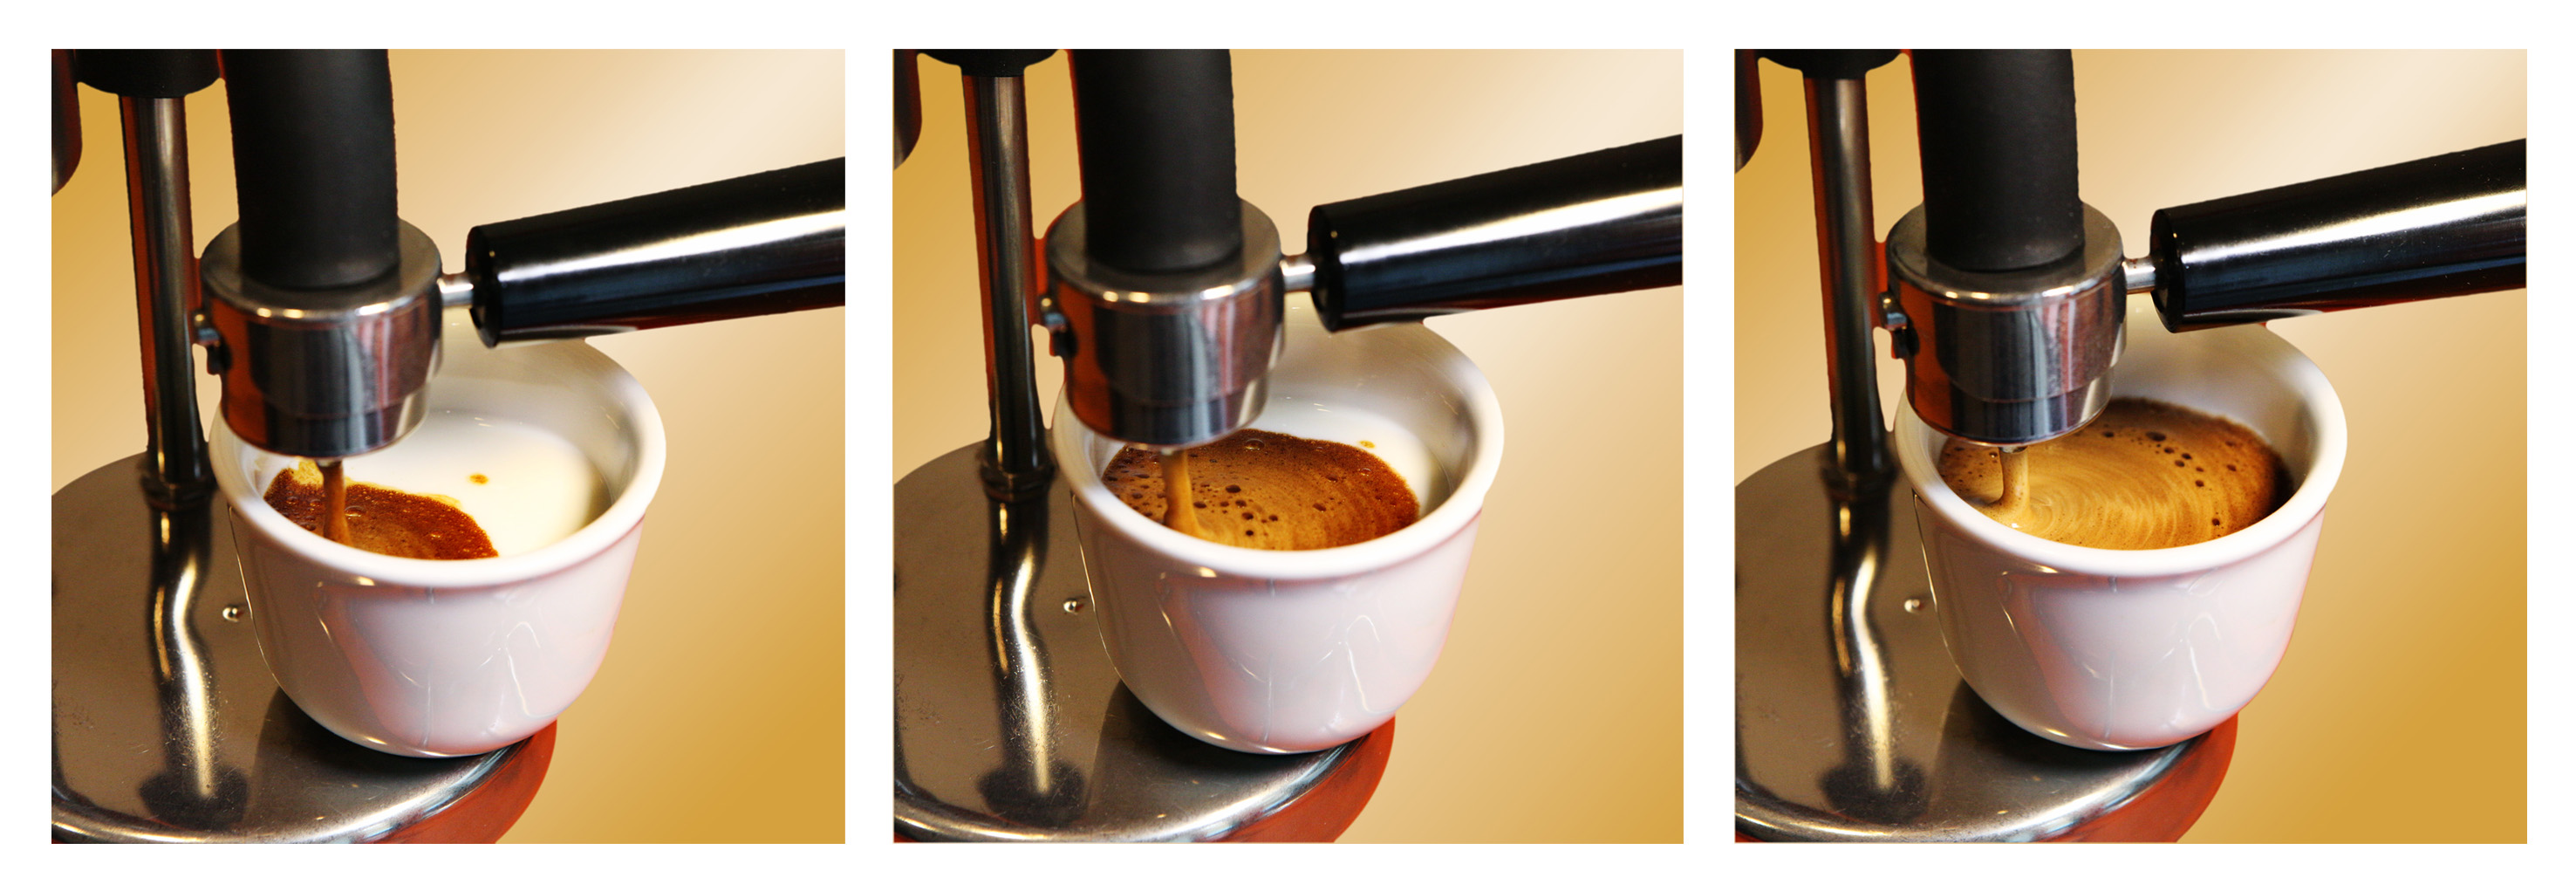 Kamira Espresso Cremoso - La Straordinaria Macchina per Espresso Kamira -  zero inquinamento perché usa la polvere di caffè ad uso moka - no cialde e  no capsule - funziona su qualsiasi